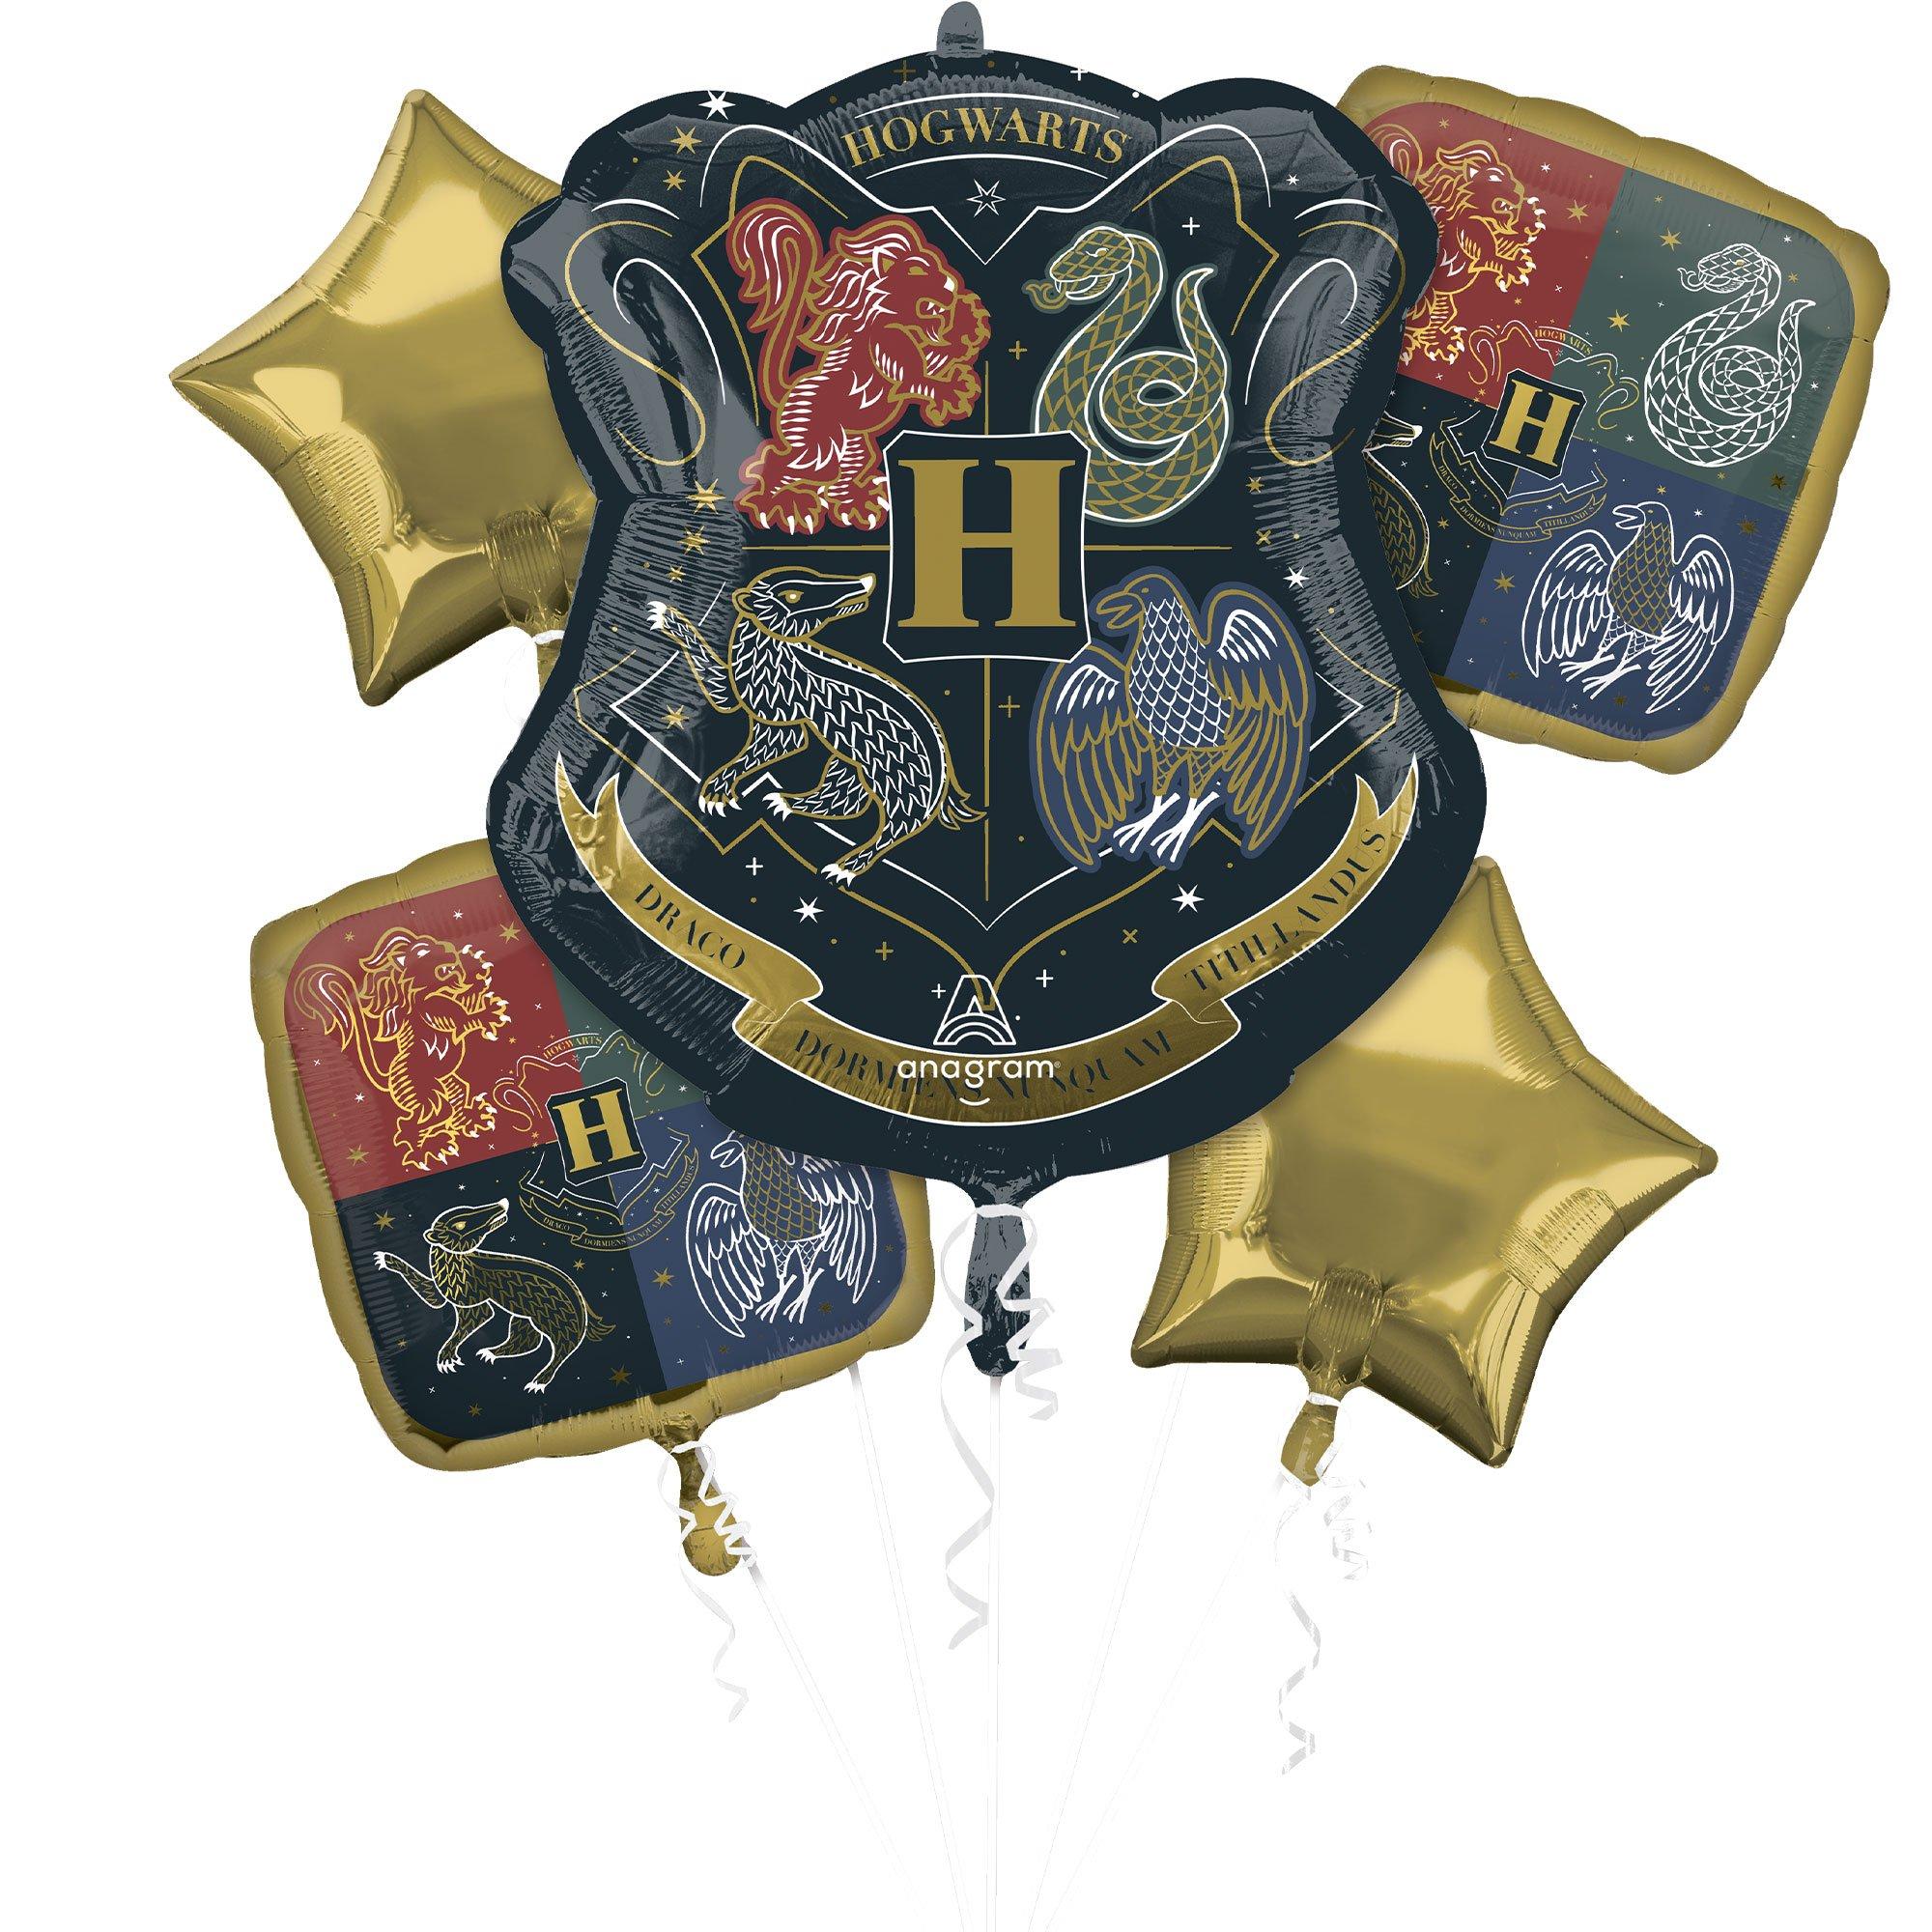 Harry Potter Balloon